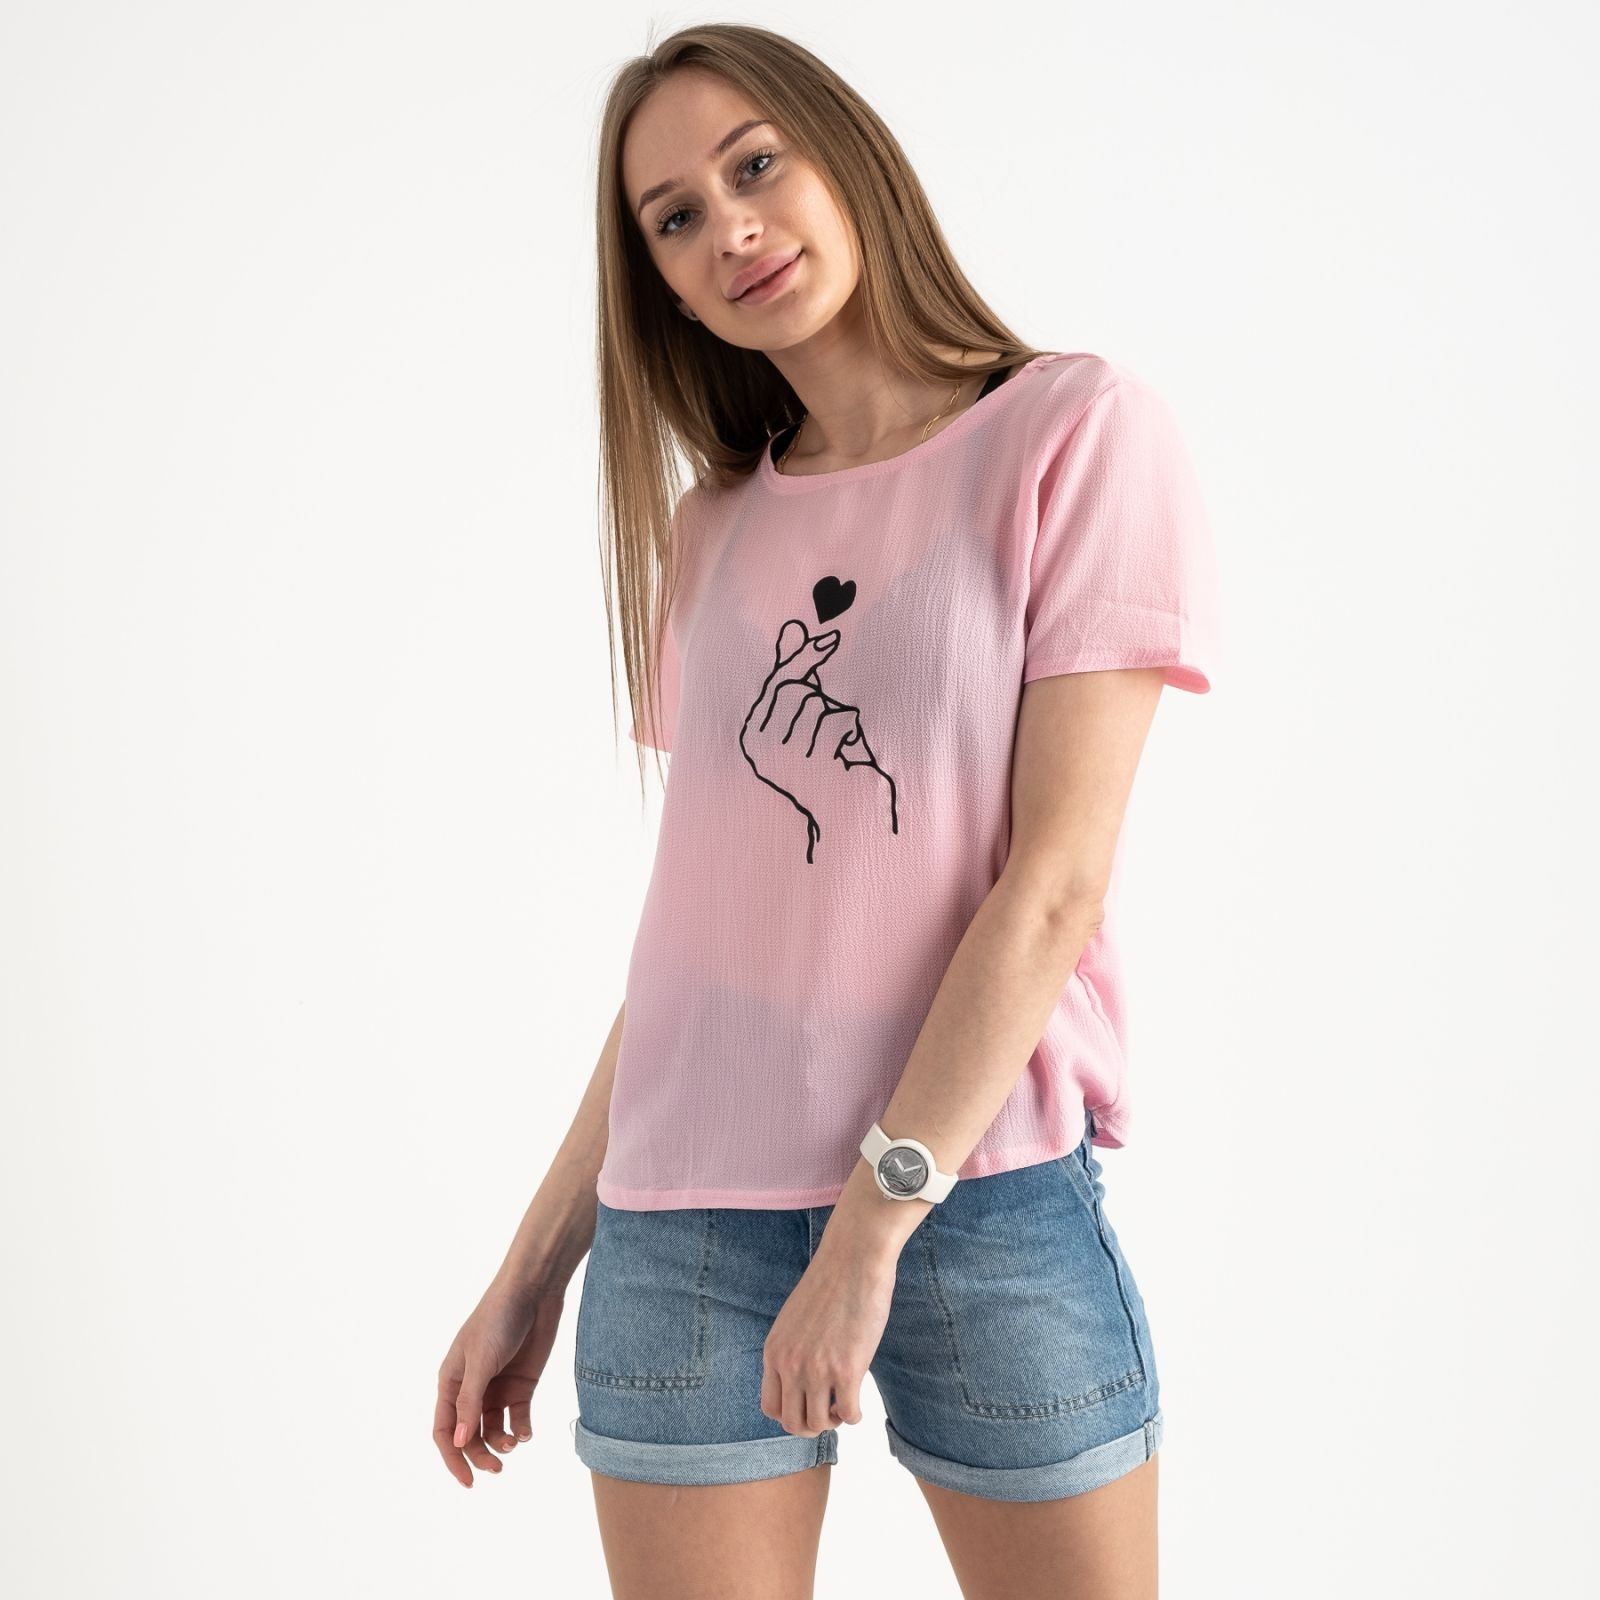 2023-33 футболка розовая женская с принтом (5 ед. размеры: 42.44.46.48.50)